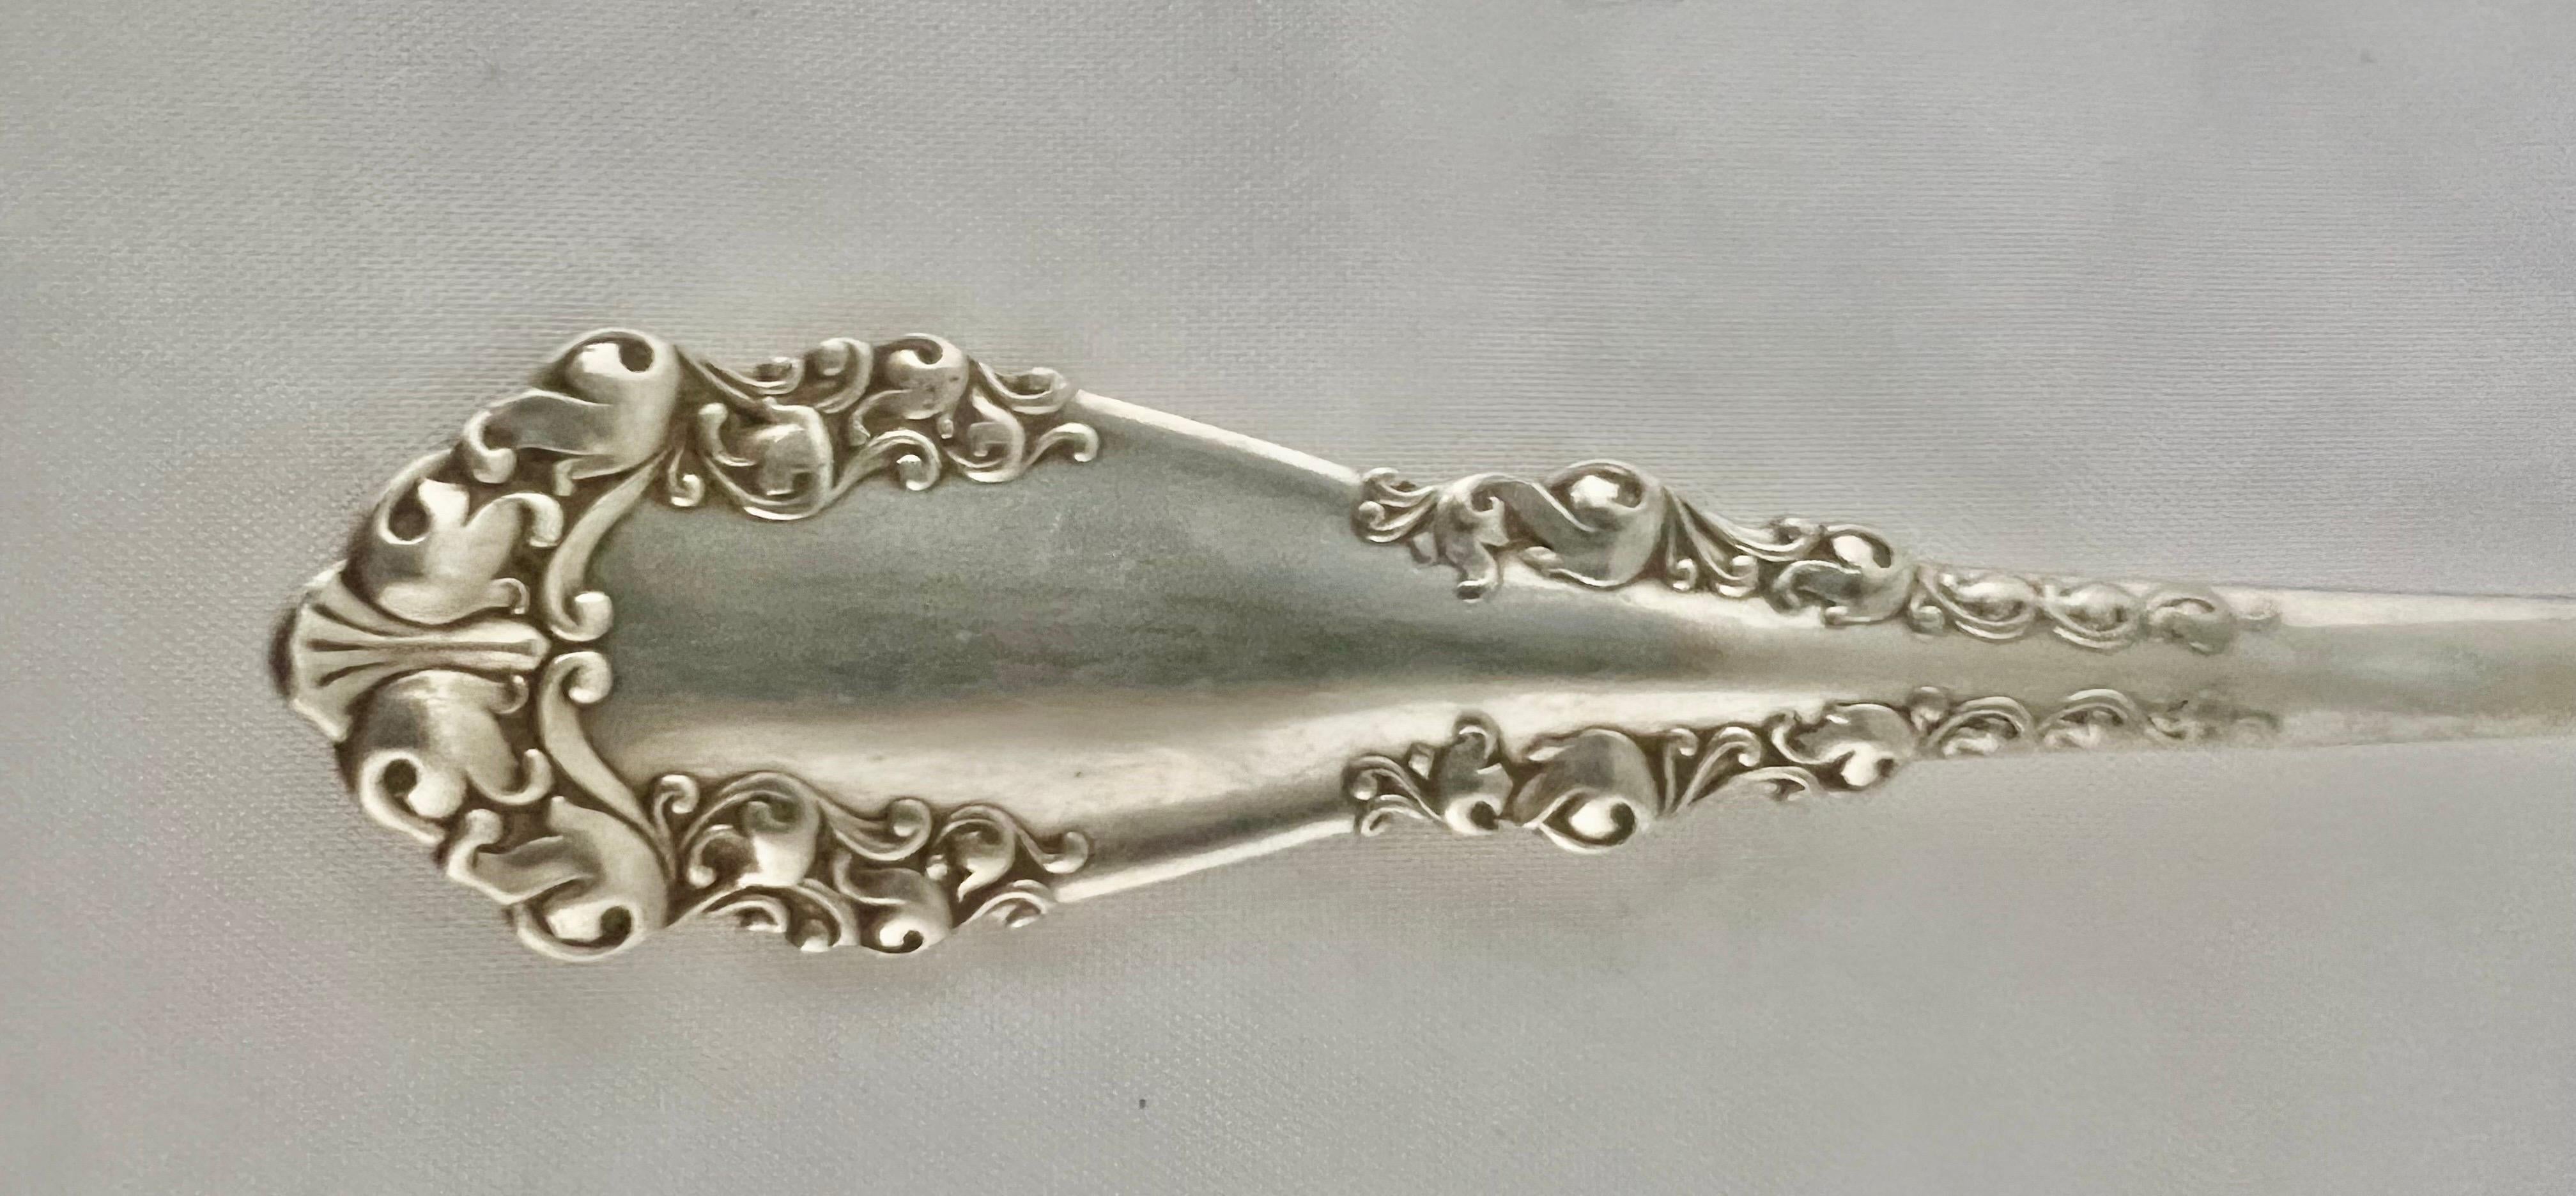 Ein silberner Servierlöffel aus dem Jahr 1847 der Gebrüder Rogers A1, der ein Sammlerstück ist.  Dieser Löffel hat ein kompliziertes Design und kann sowohl einen historischen als auch einen ästhetischen Wert haben.  Das Silber wurde in Meriden,